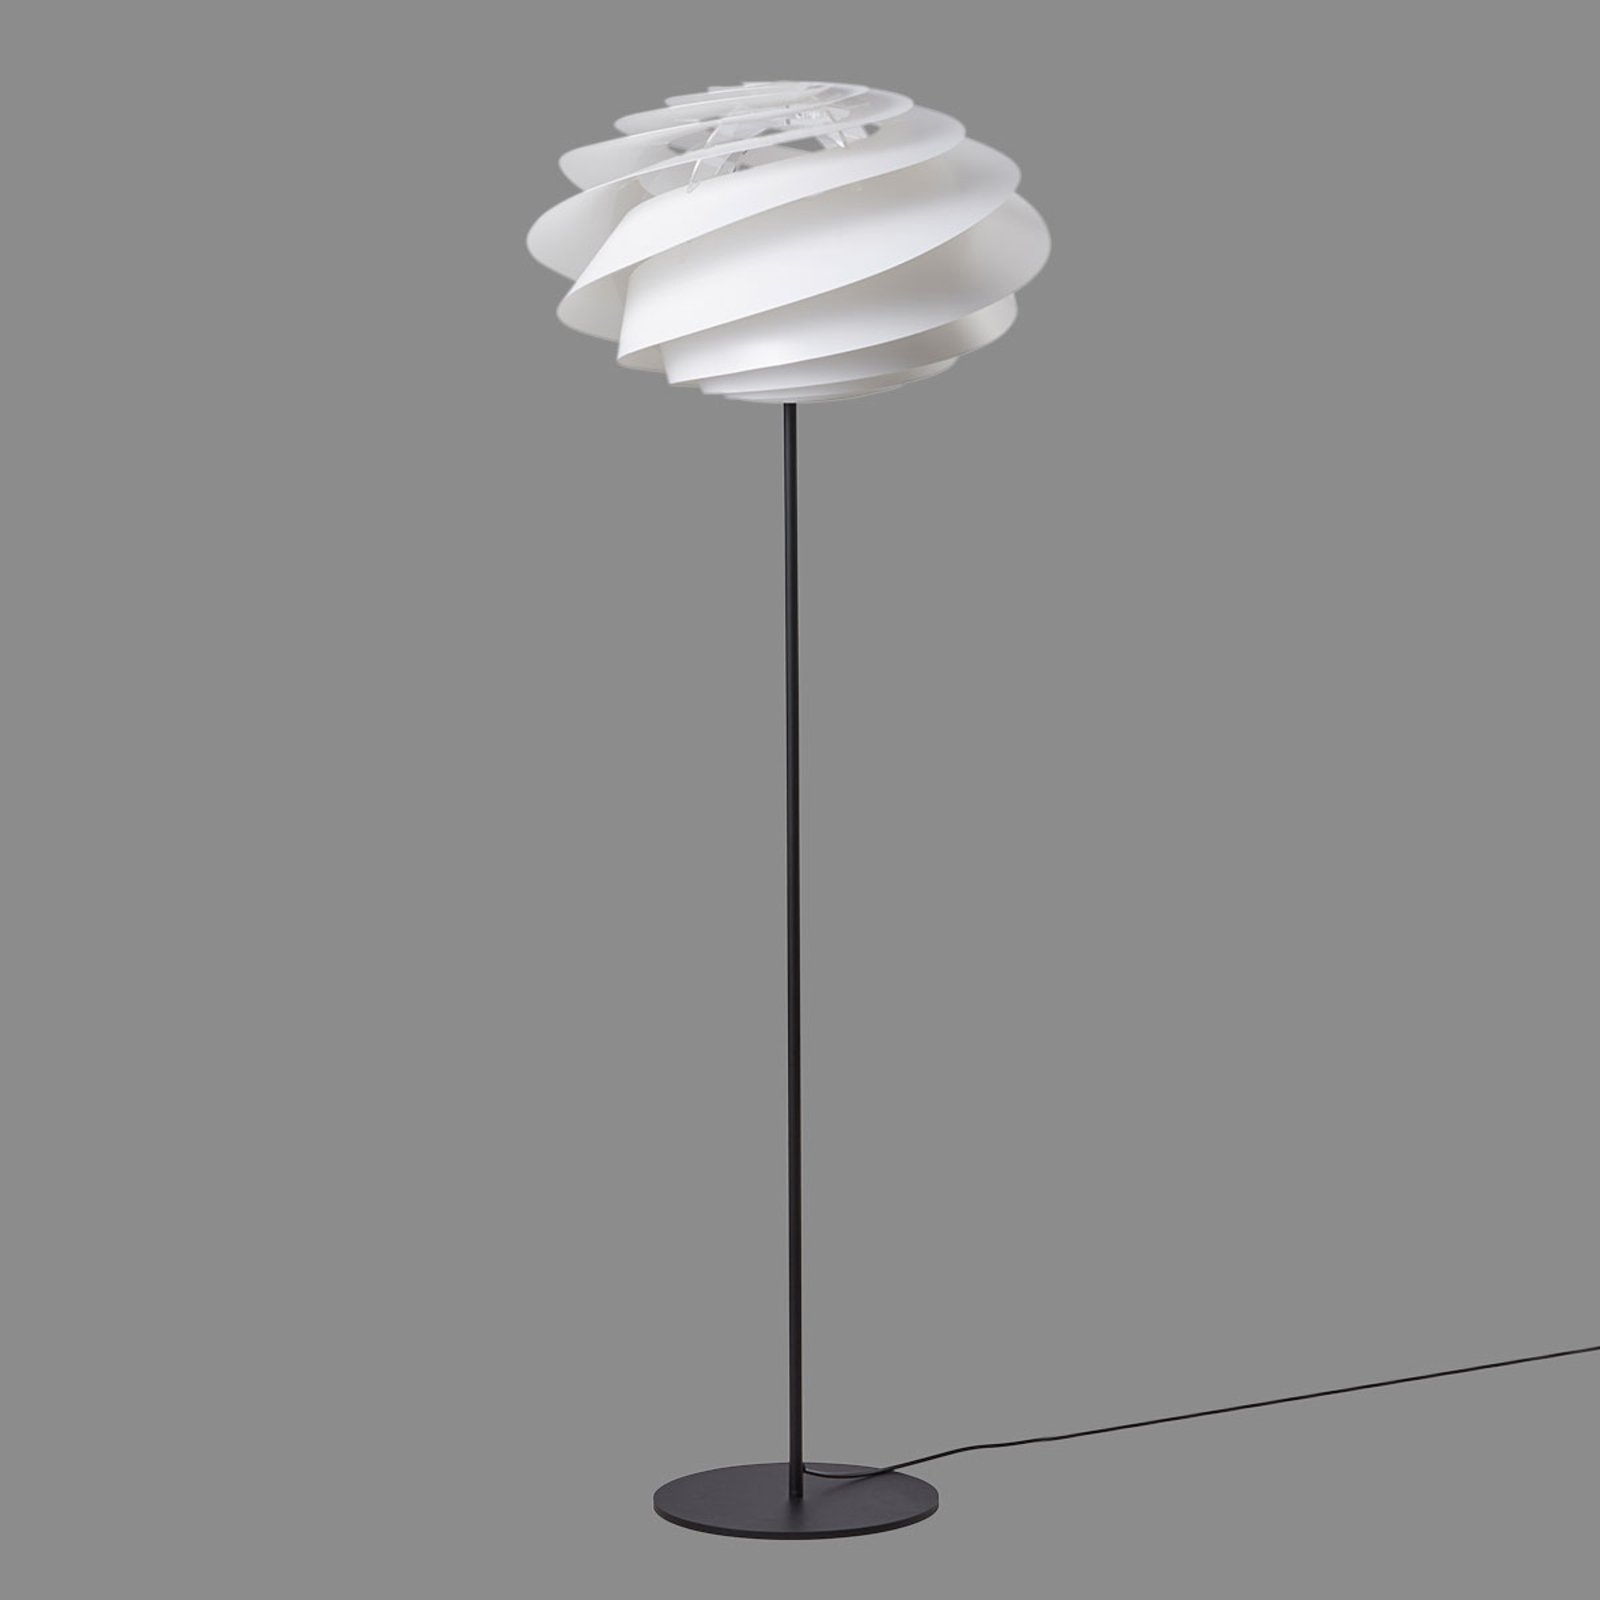 Hollywood Narabar Collega LE KLINT Swirl - witte design vloerlamp | Lampen24.be